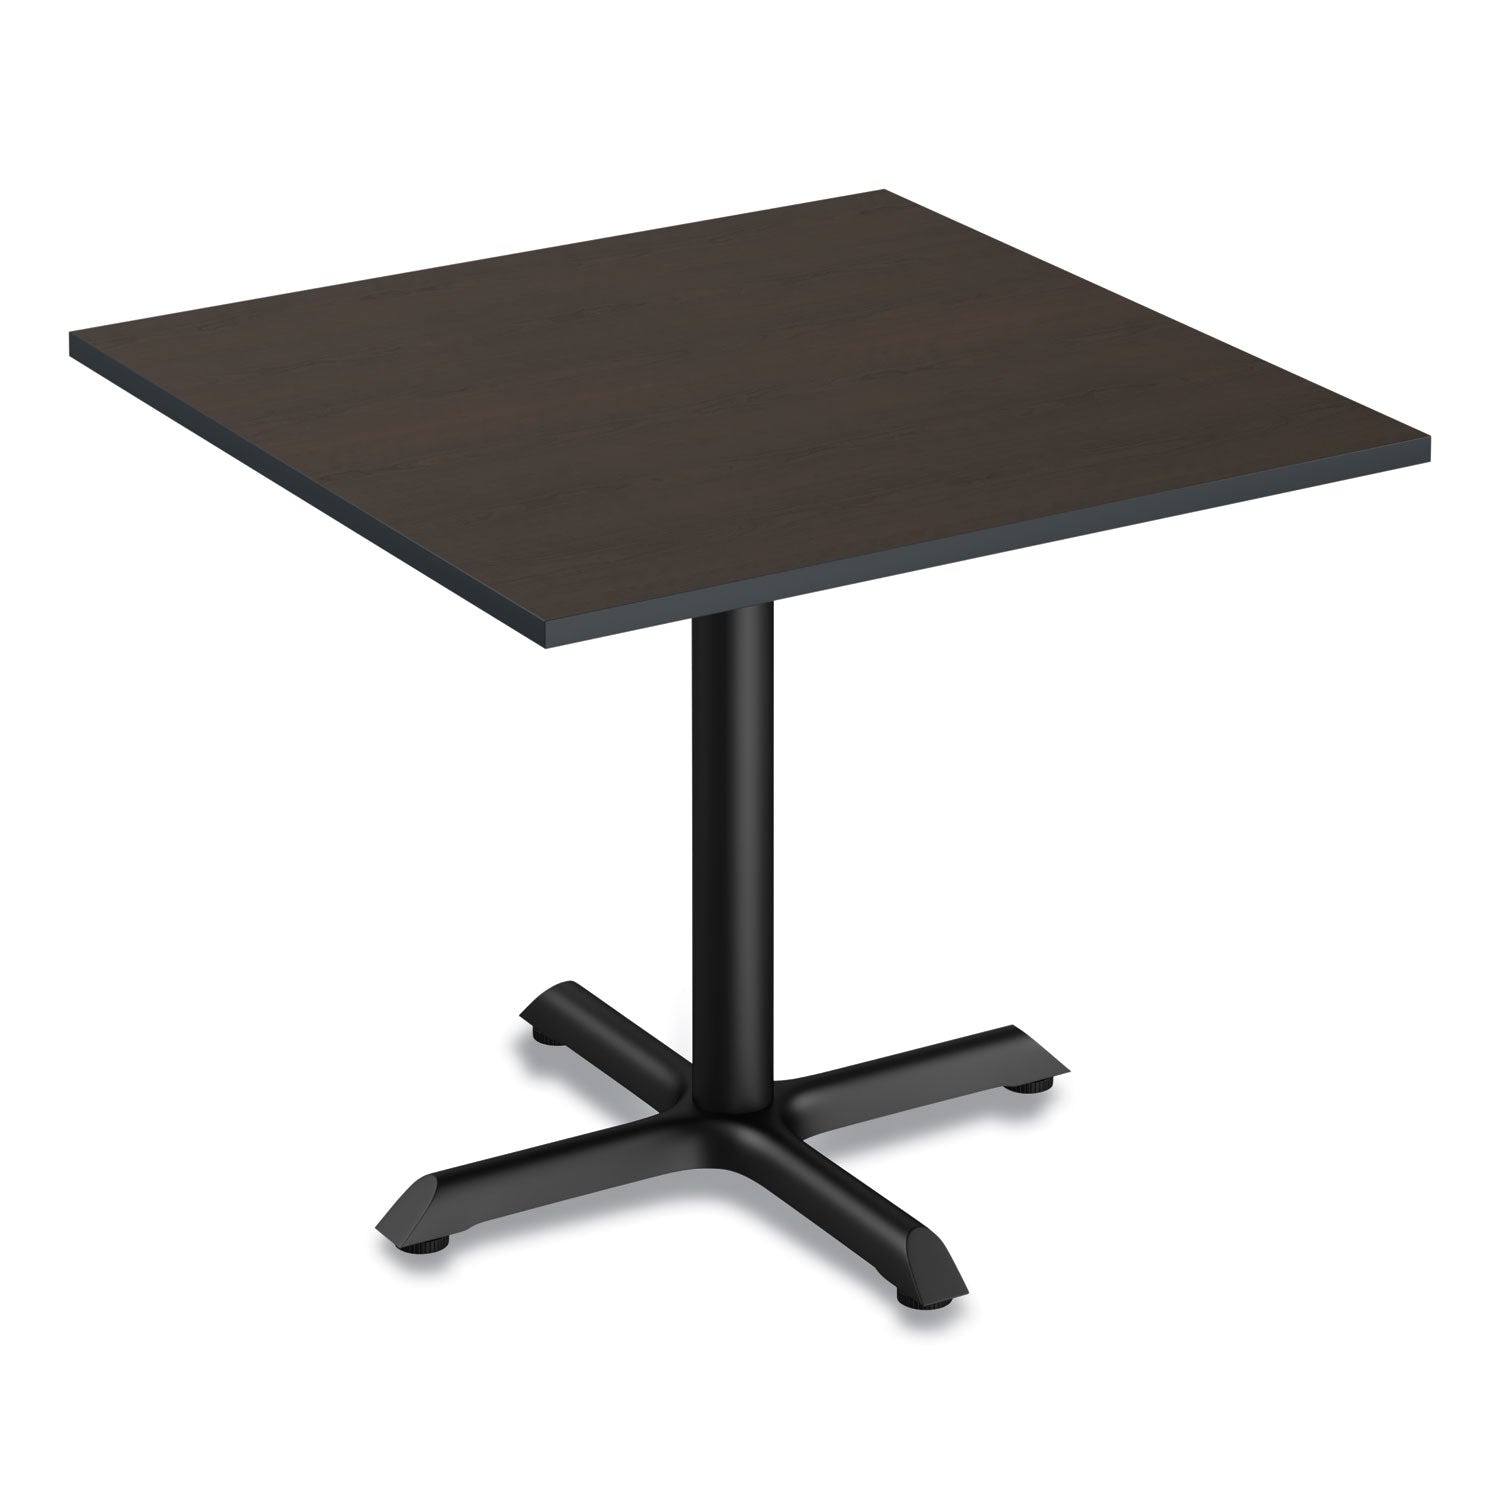 reversible-laminate-table-top-square-3538w-x-3538d-espresso-walnut_alettsq36ew - 5